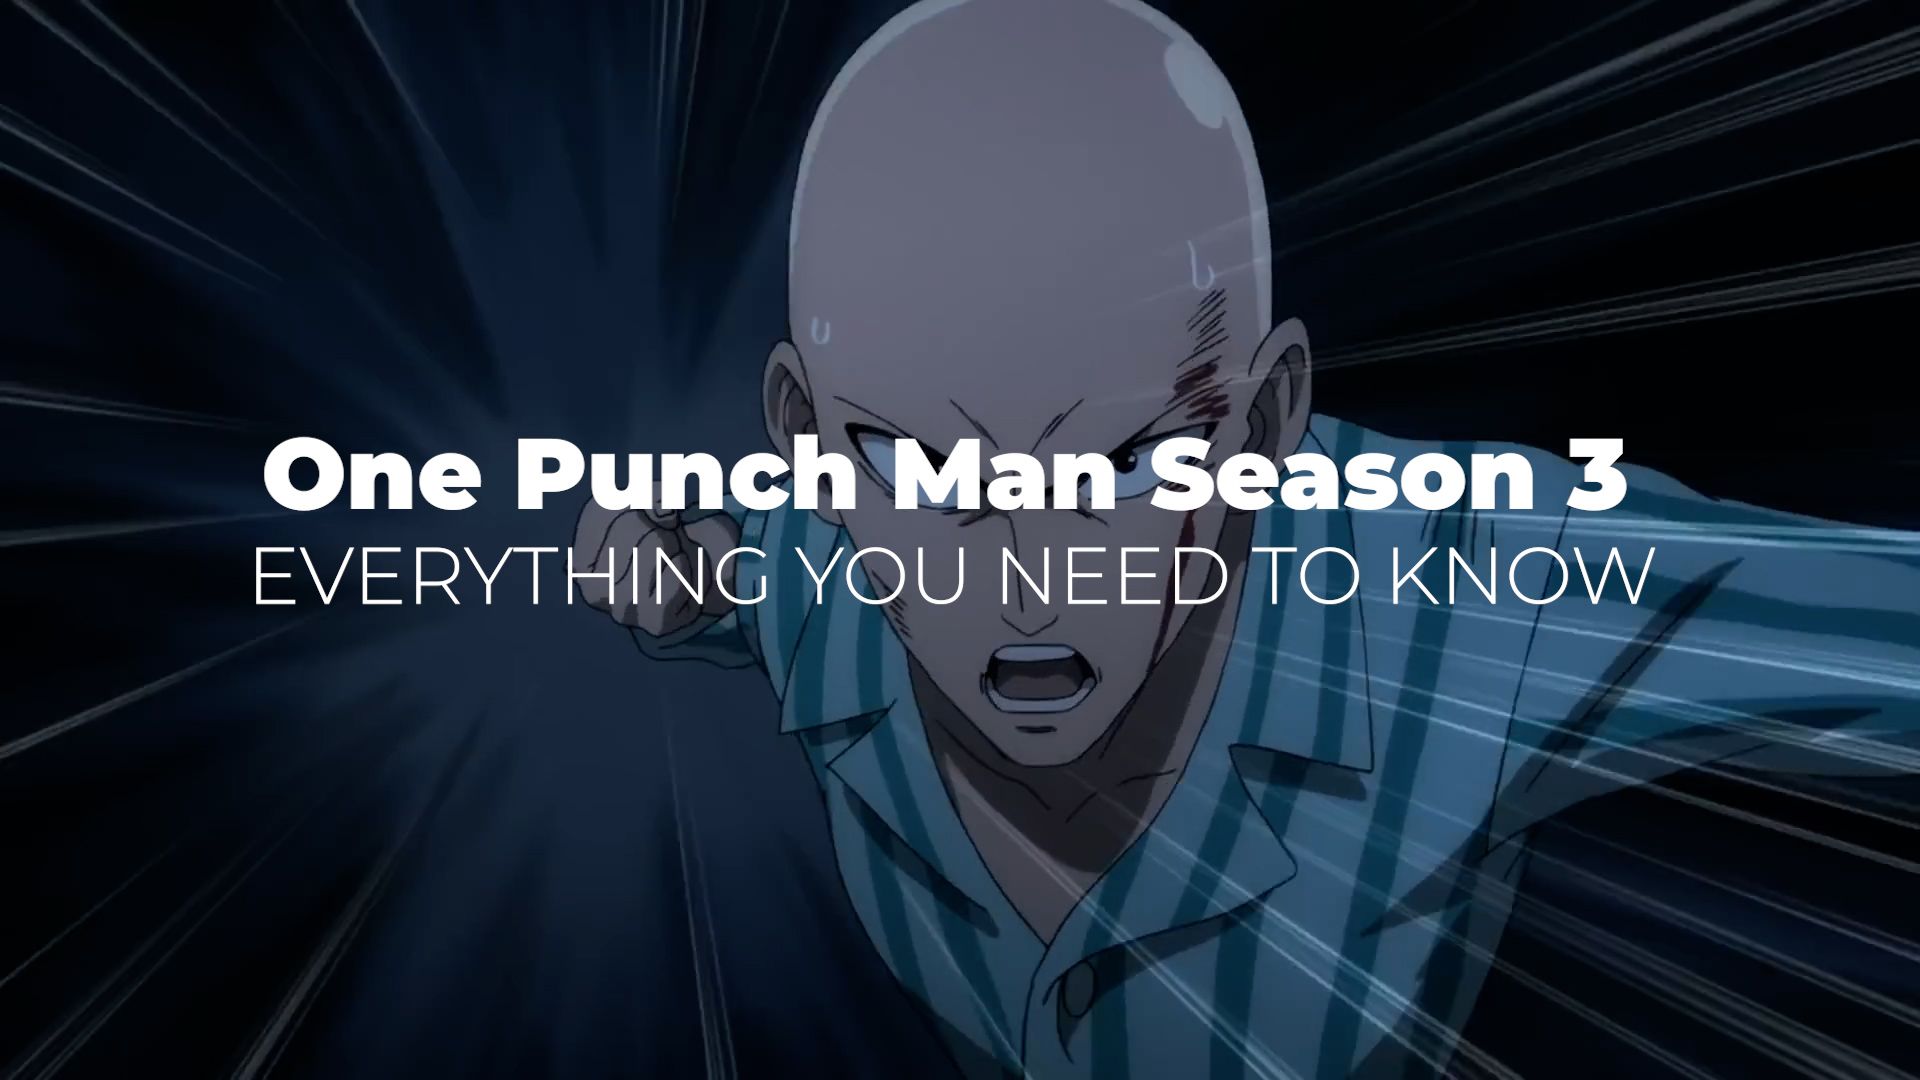 One-Punch Man [1920x1080]  One punch man manga, One punch man